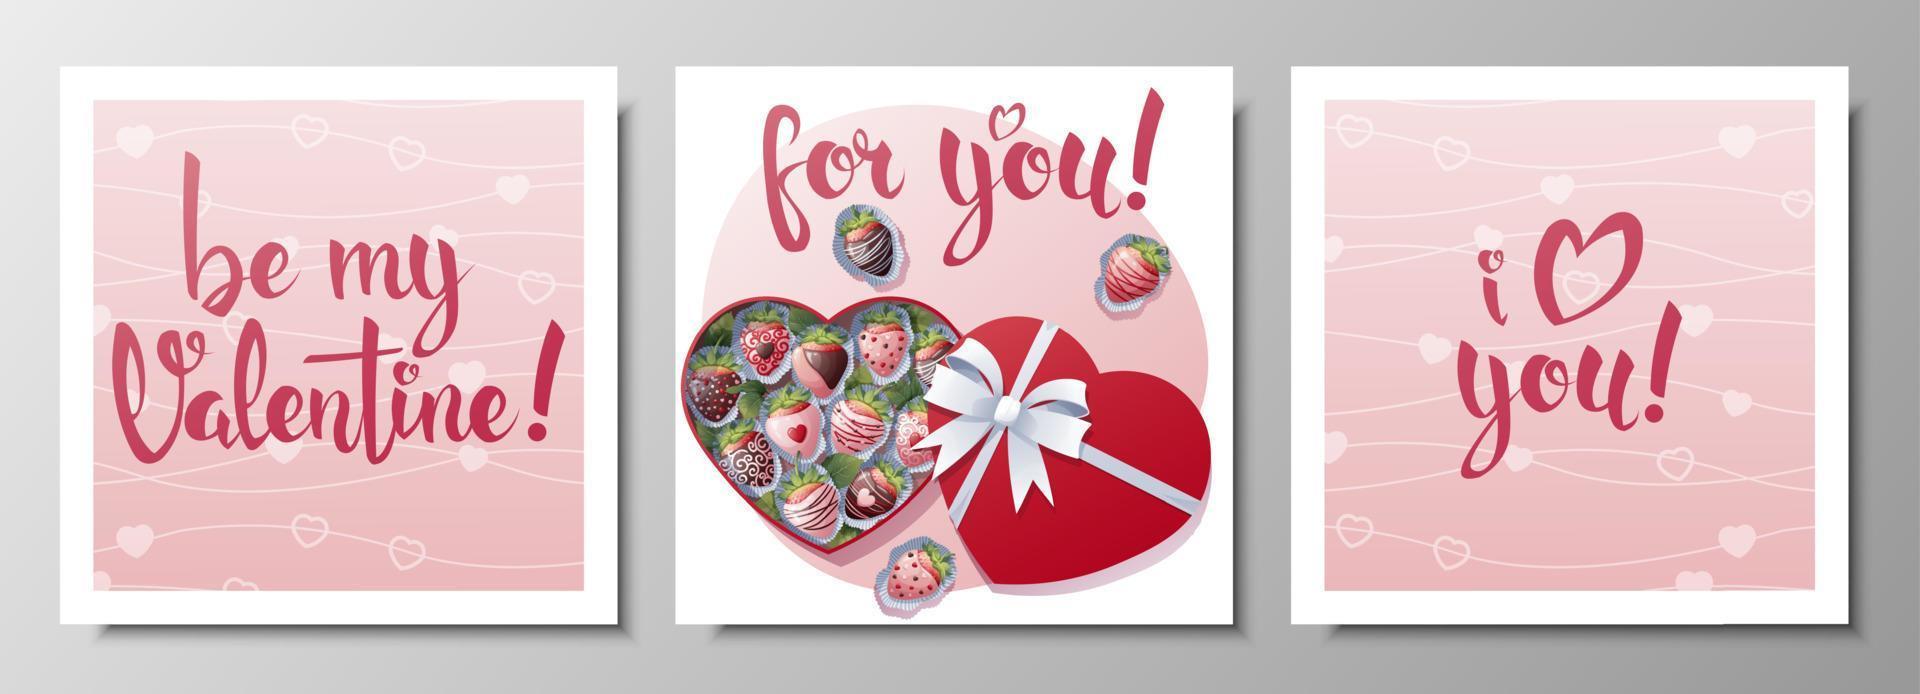 ensemble de carré salutation cartes pour Valentin s journée. une boîte de enrobé de chocolat des fraises. affiche, bannière, prospectus avec manuscrit toutes nos félicitations. vecteur